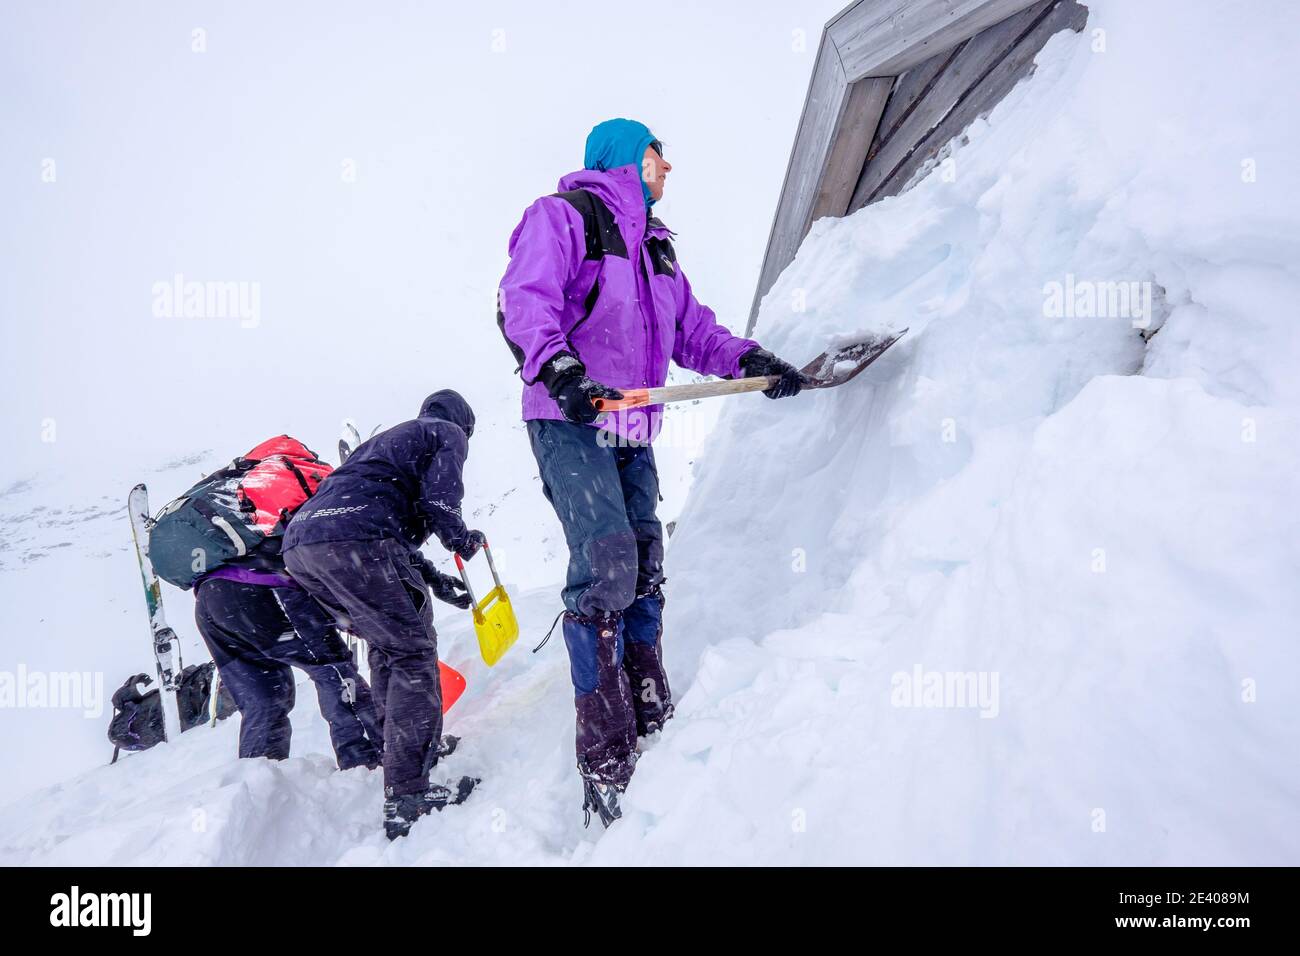 Skieurs lors d'une expédition de ski de randonnée qui creusent la neige Hutte liée dans les montagnes de Norvège Banque D'Images